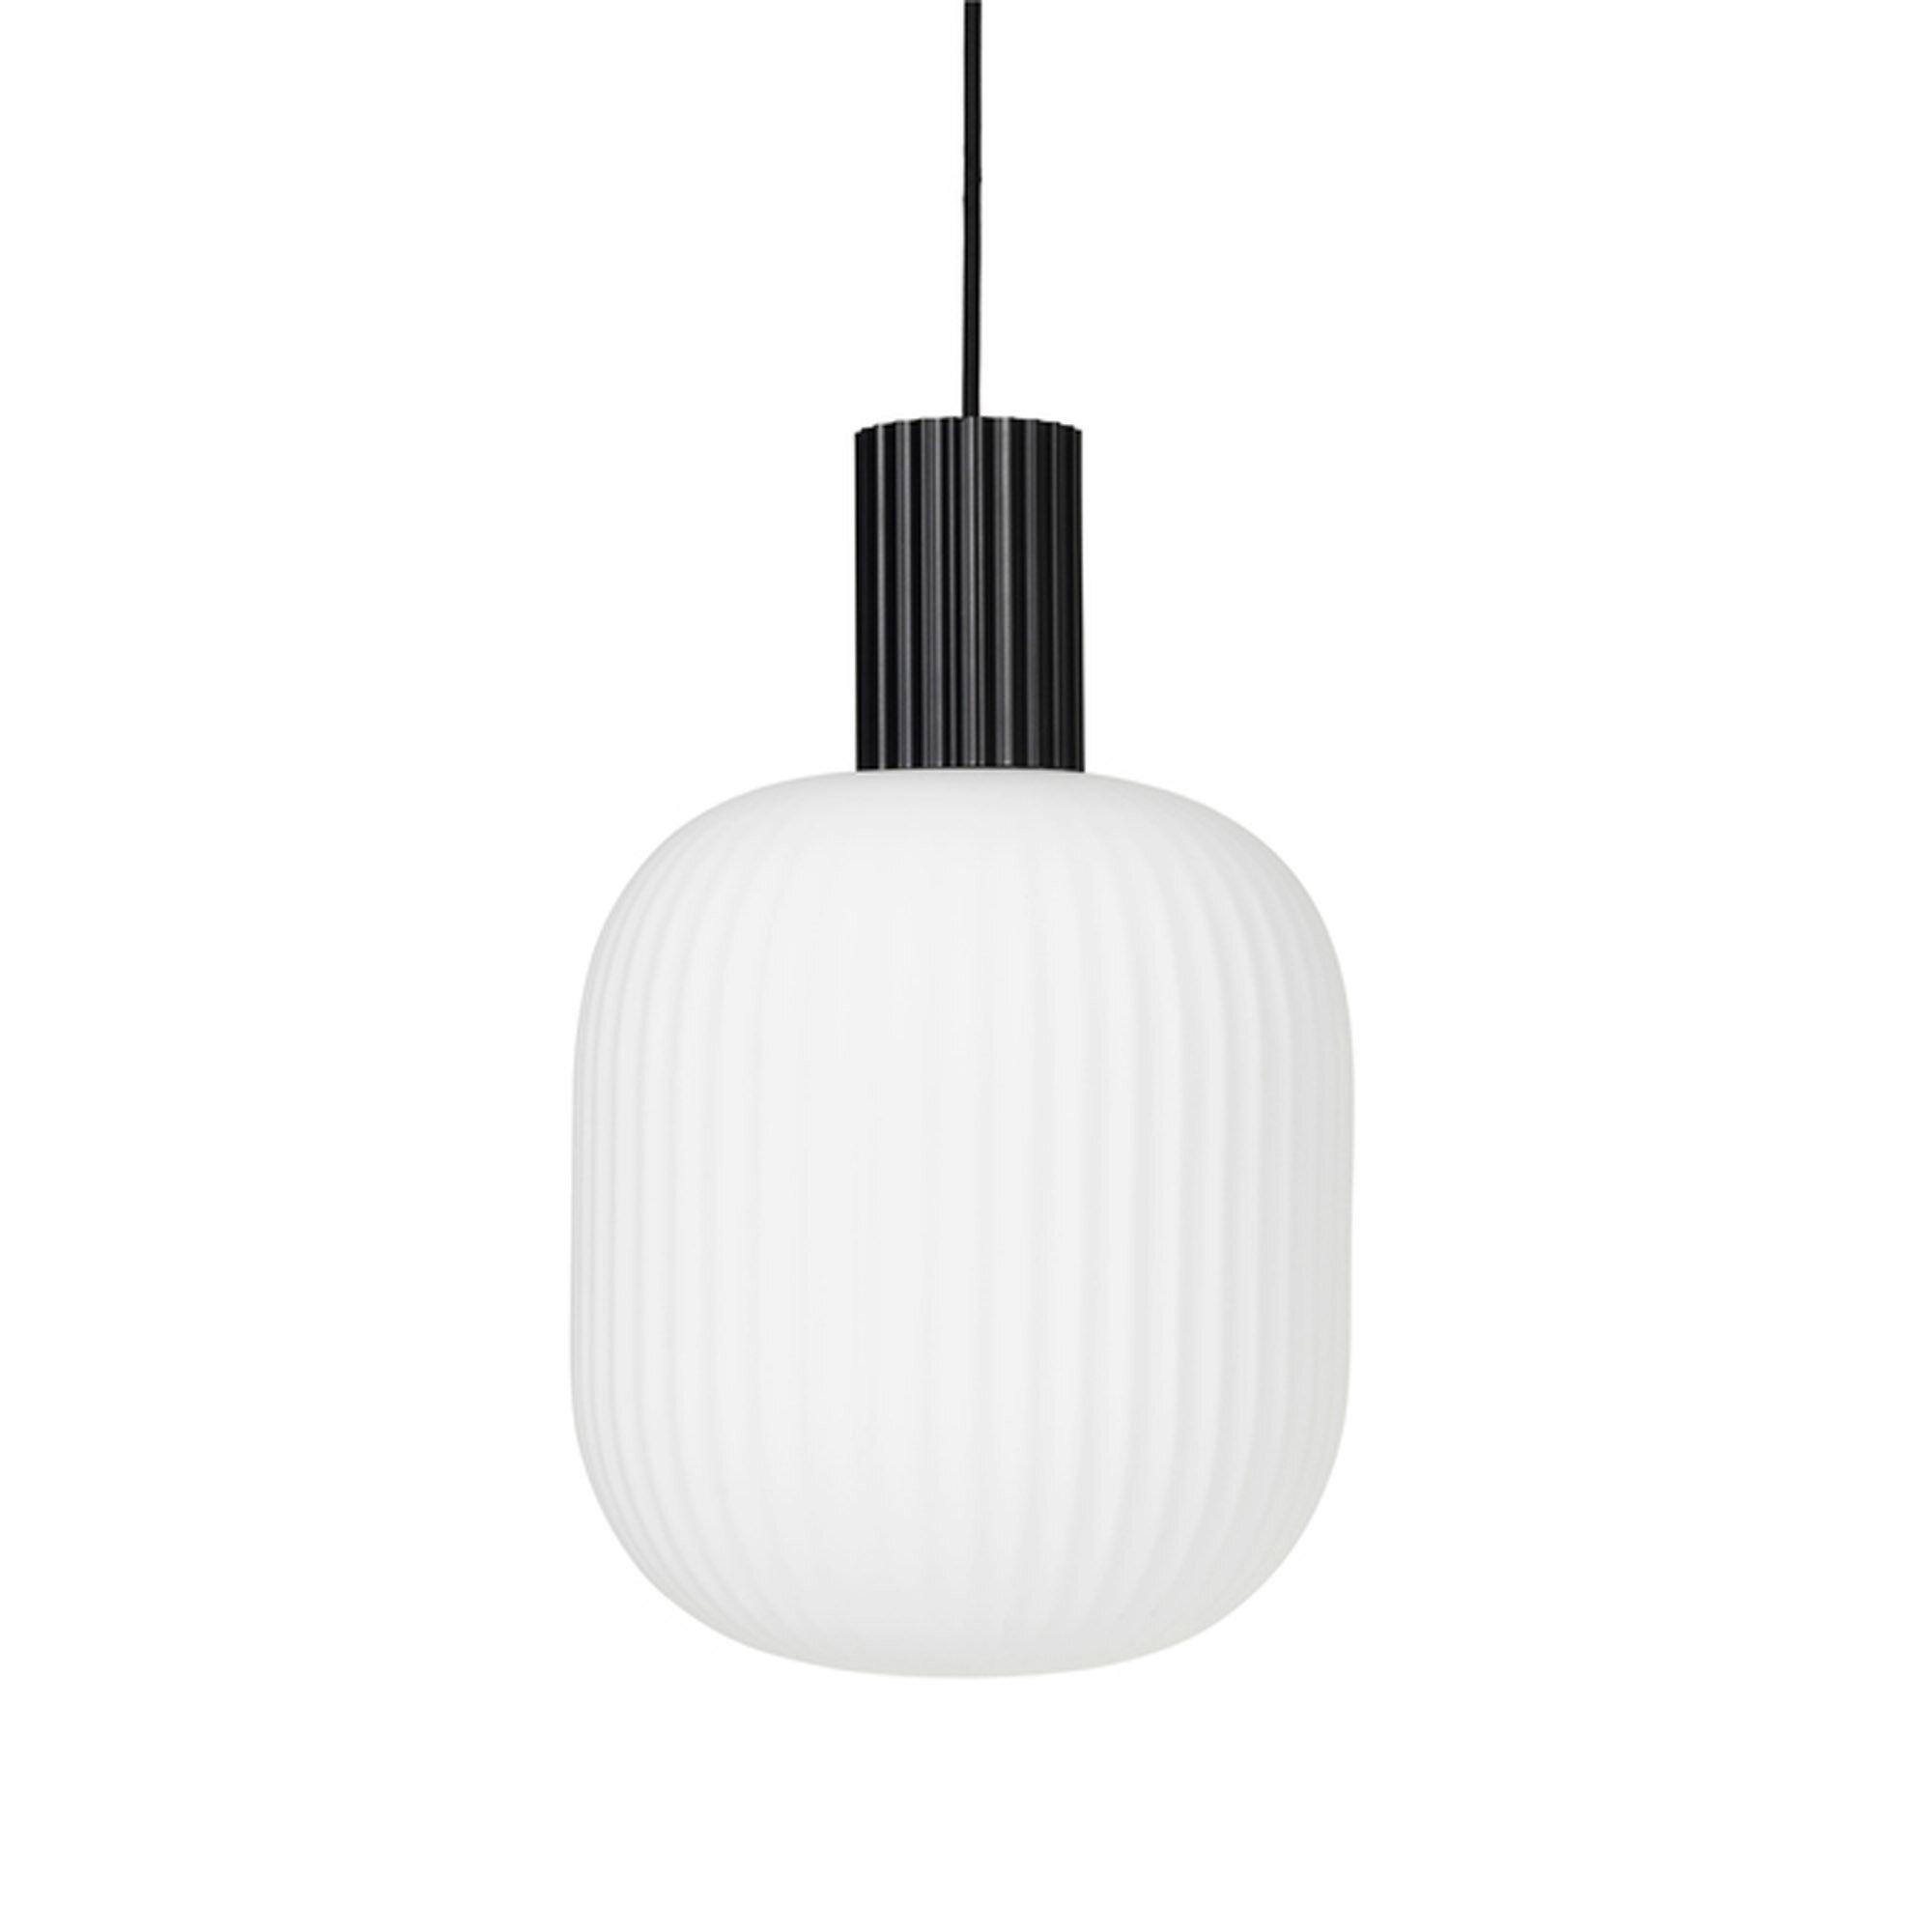  Loft Lampe 'Lolly' fra Broste Copenhagen (Varenr: 60060002)